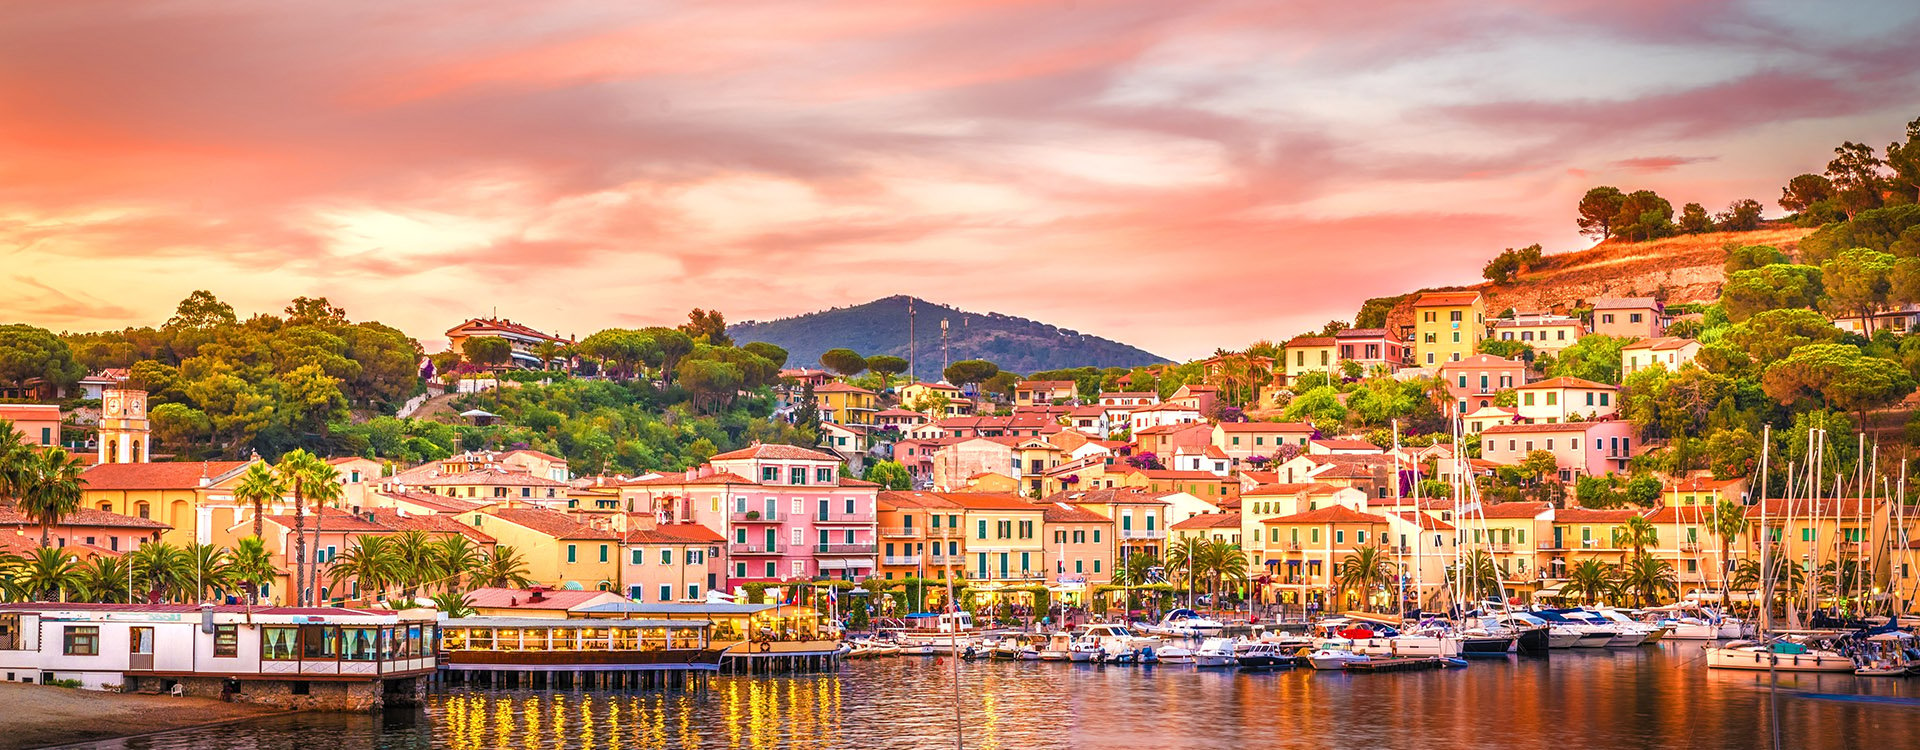 Harbor and village Porto Azzurro at sunset, Elba islands, Tuscany, Italy